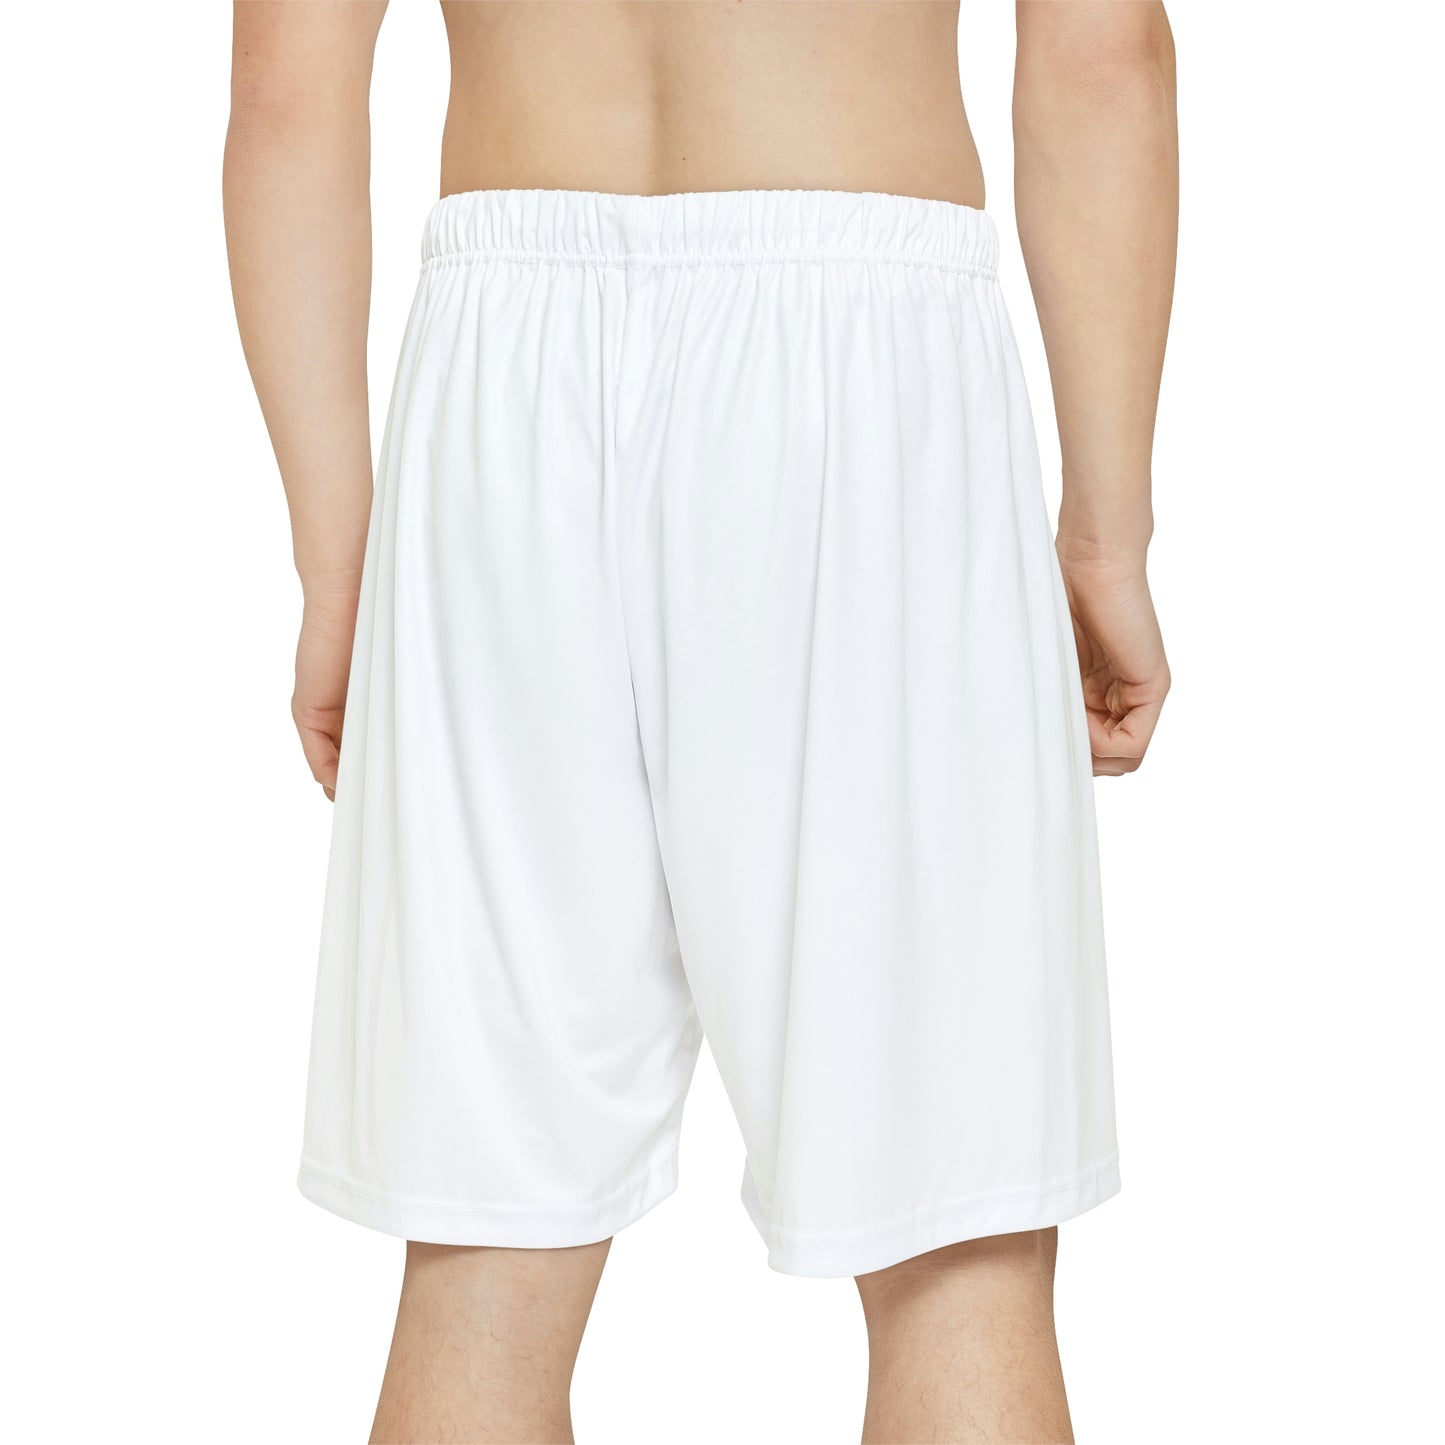 MUSH Men's Gym Shorts